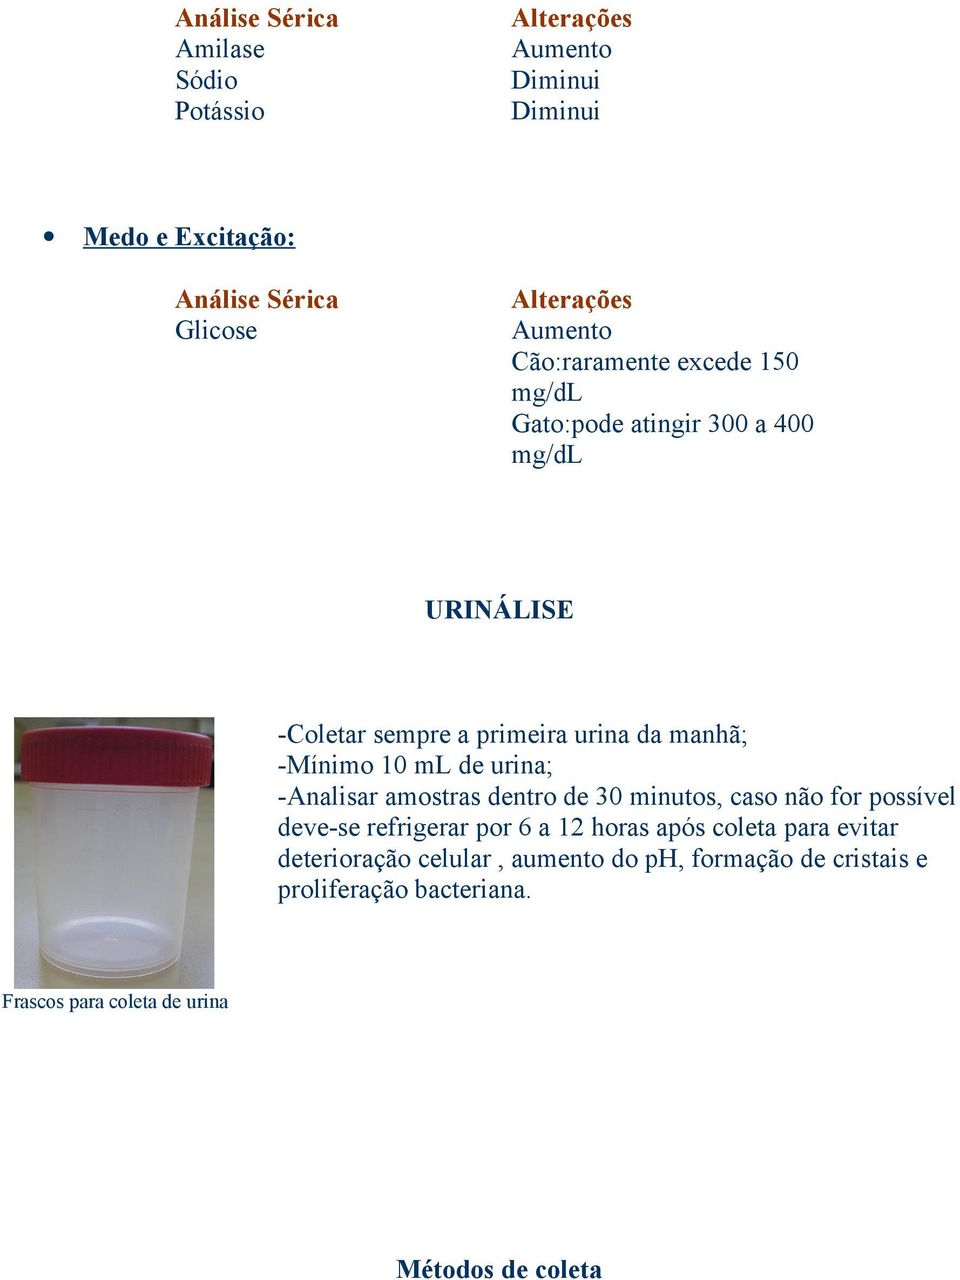 ml de urina; -Analisar amostras dentro de 30 minutos, caso não for possível deve-se refrigerar por 6 a 12 horas após coleta para